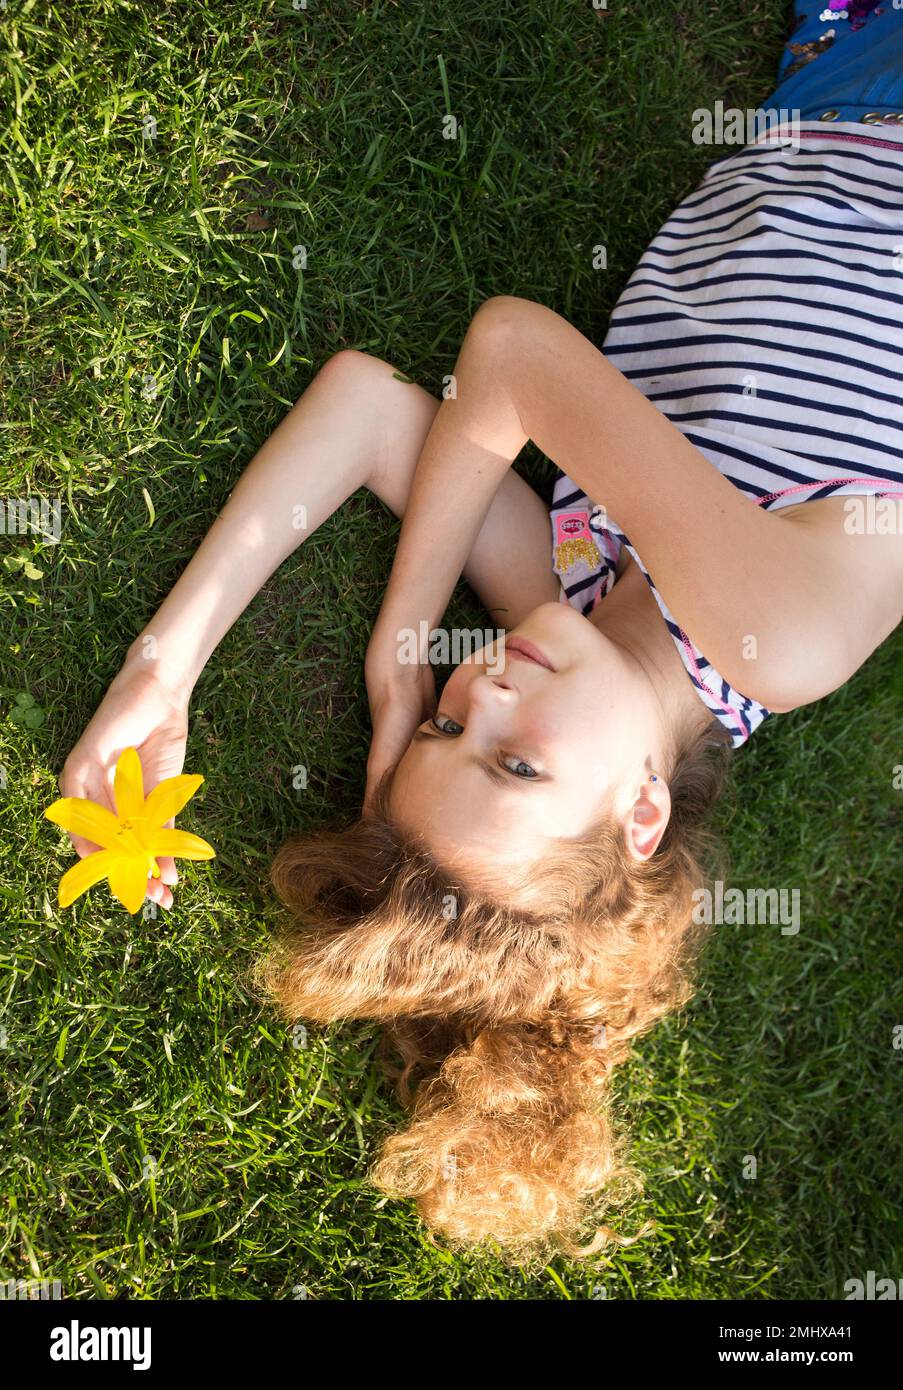 Hübsches Mädchen, 11-12 Jahre alt, liegt auf dem Rasen an einem sonnigen Sommertag, sonnt sich. Erholung mit Vergnügen in der Natur. Tag der Erde. Unachtsamkeit, Harmo Stockfoto